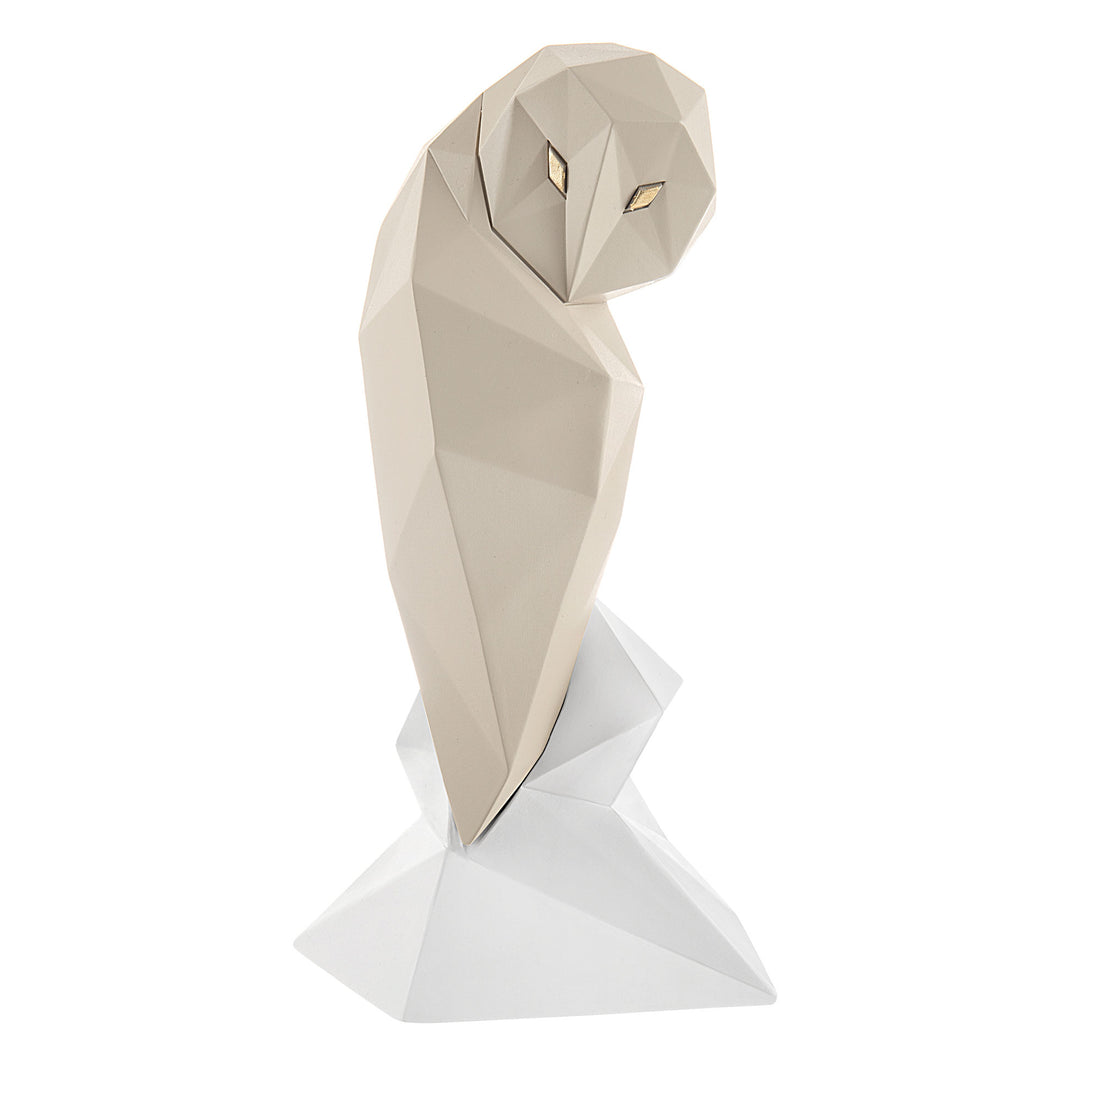 BONGELLI PREZIOSI Statua Figura Gufo Stilizzato Nocciola 16cm Marmorino